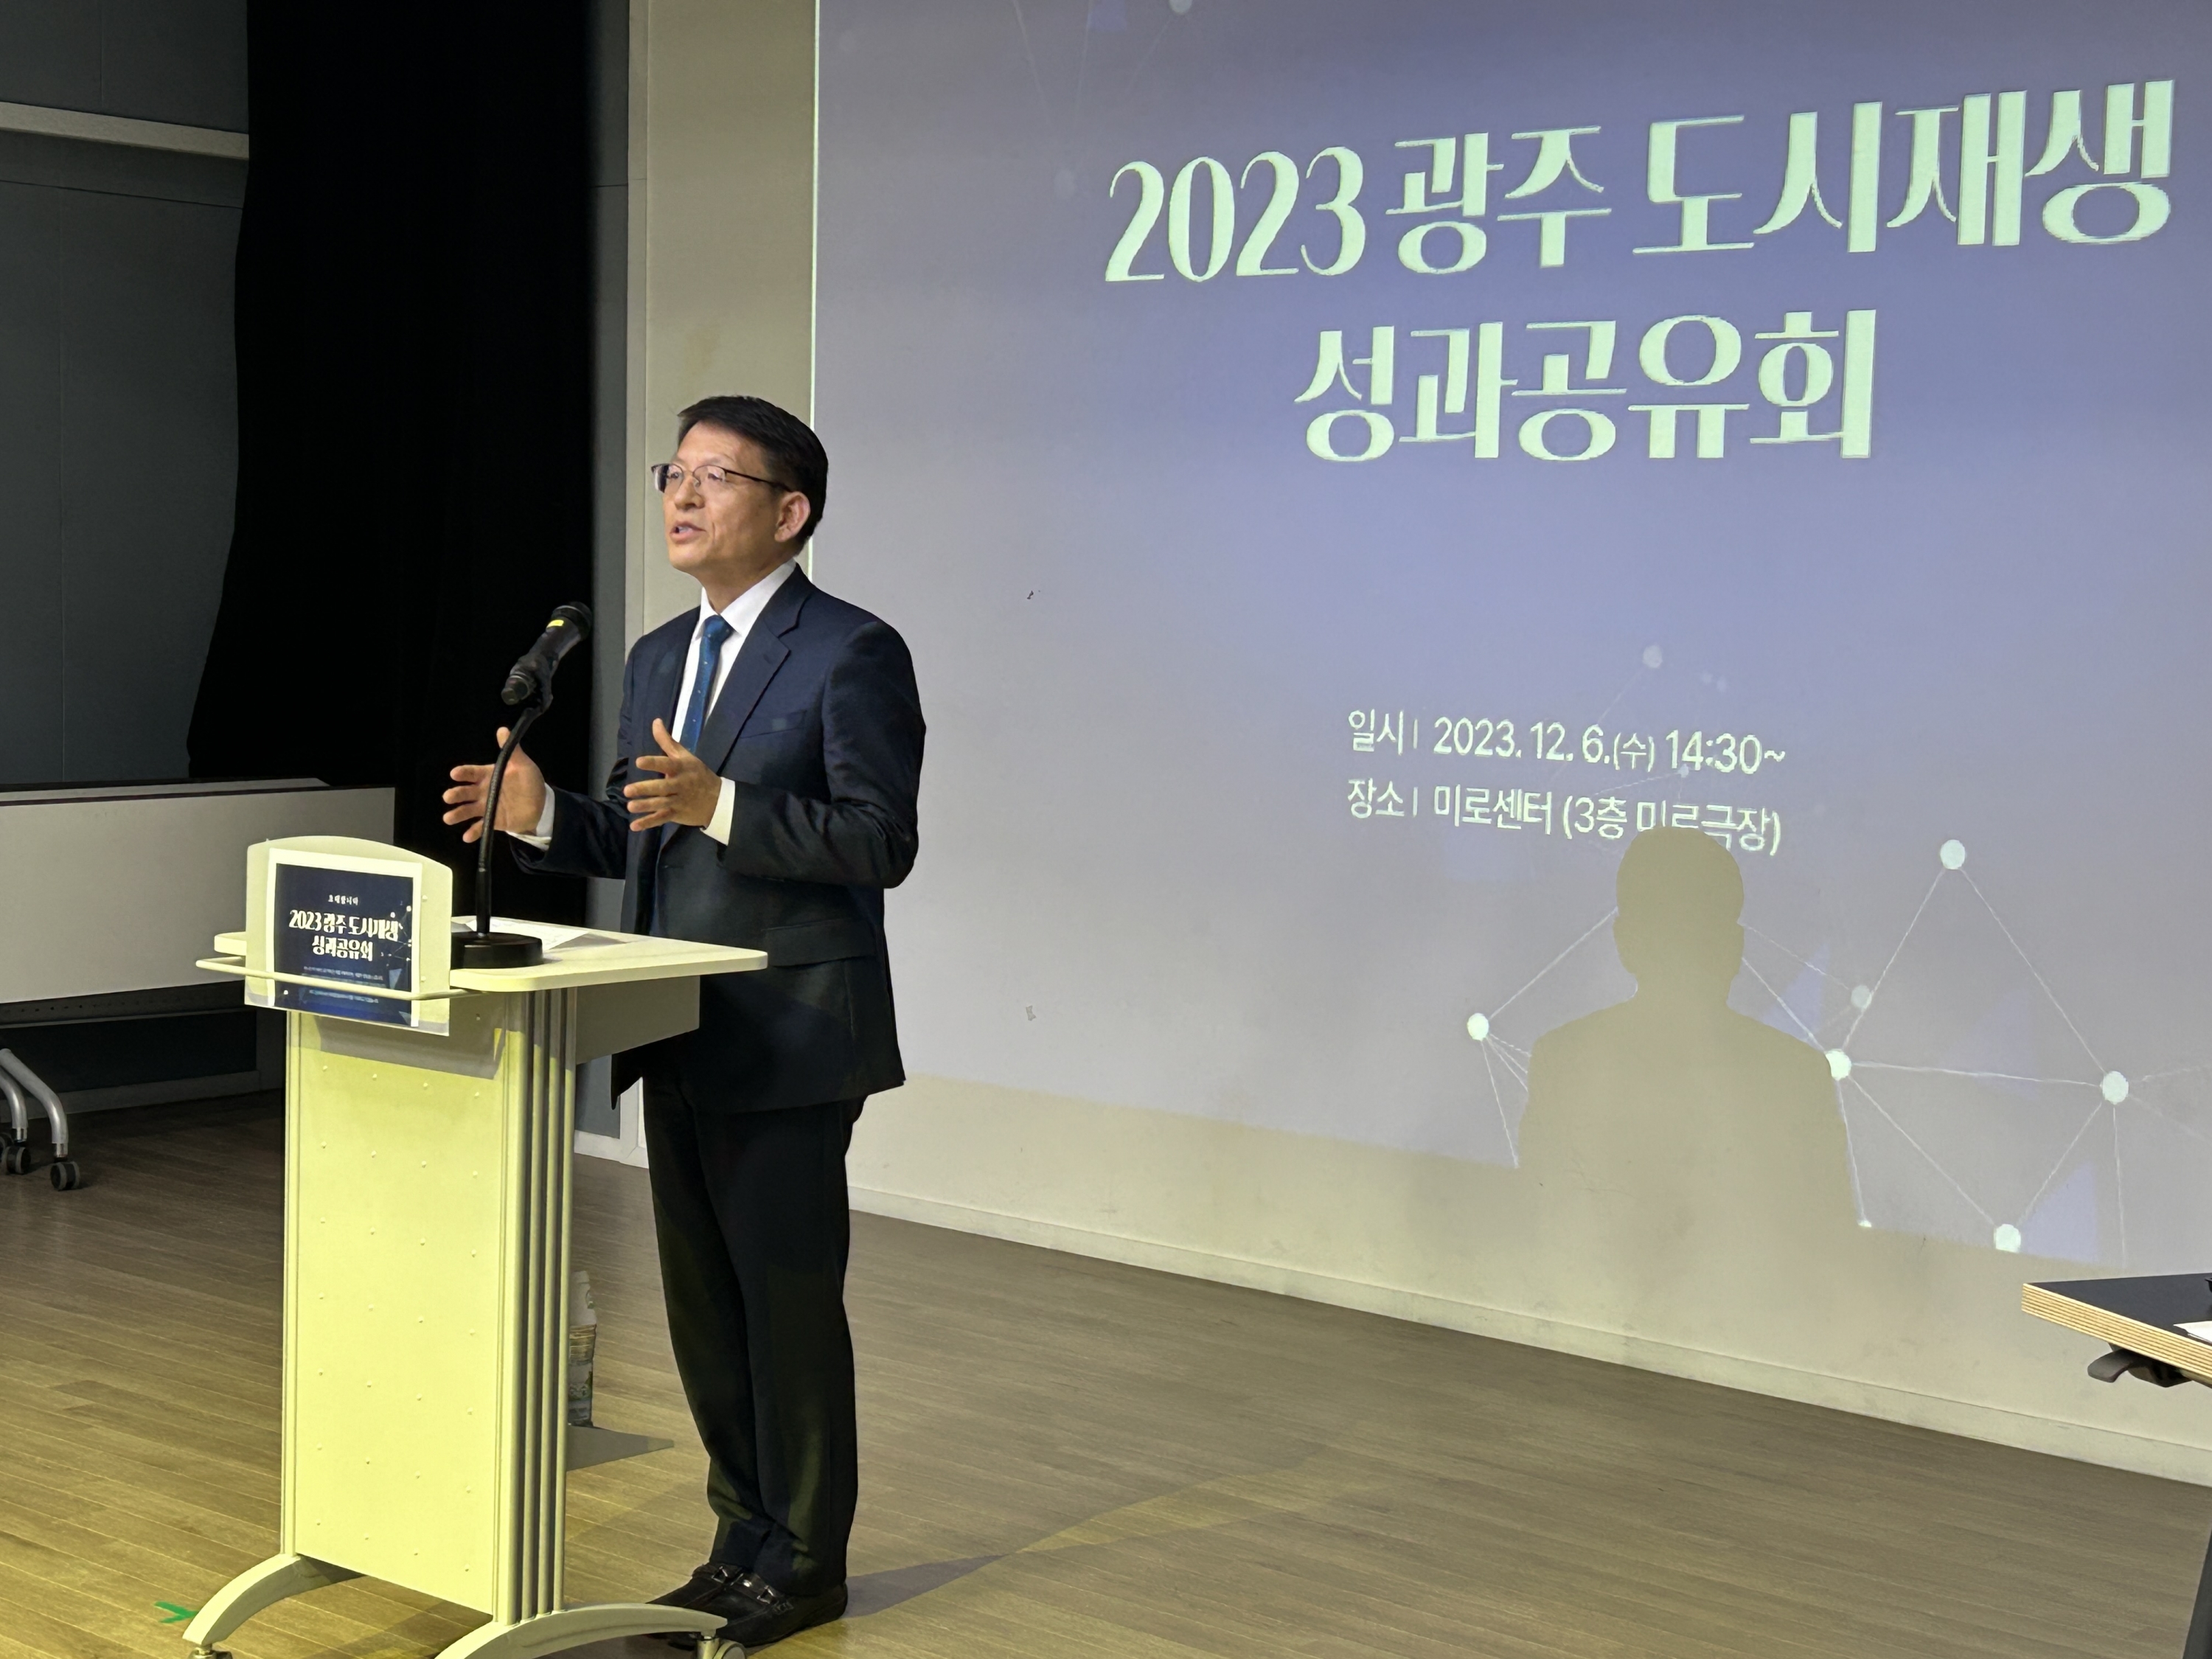 2023 광주 도시재생 성과공유회